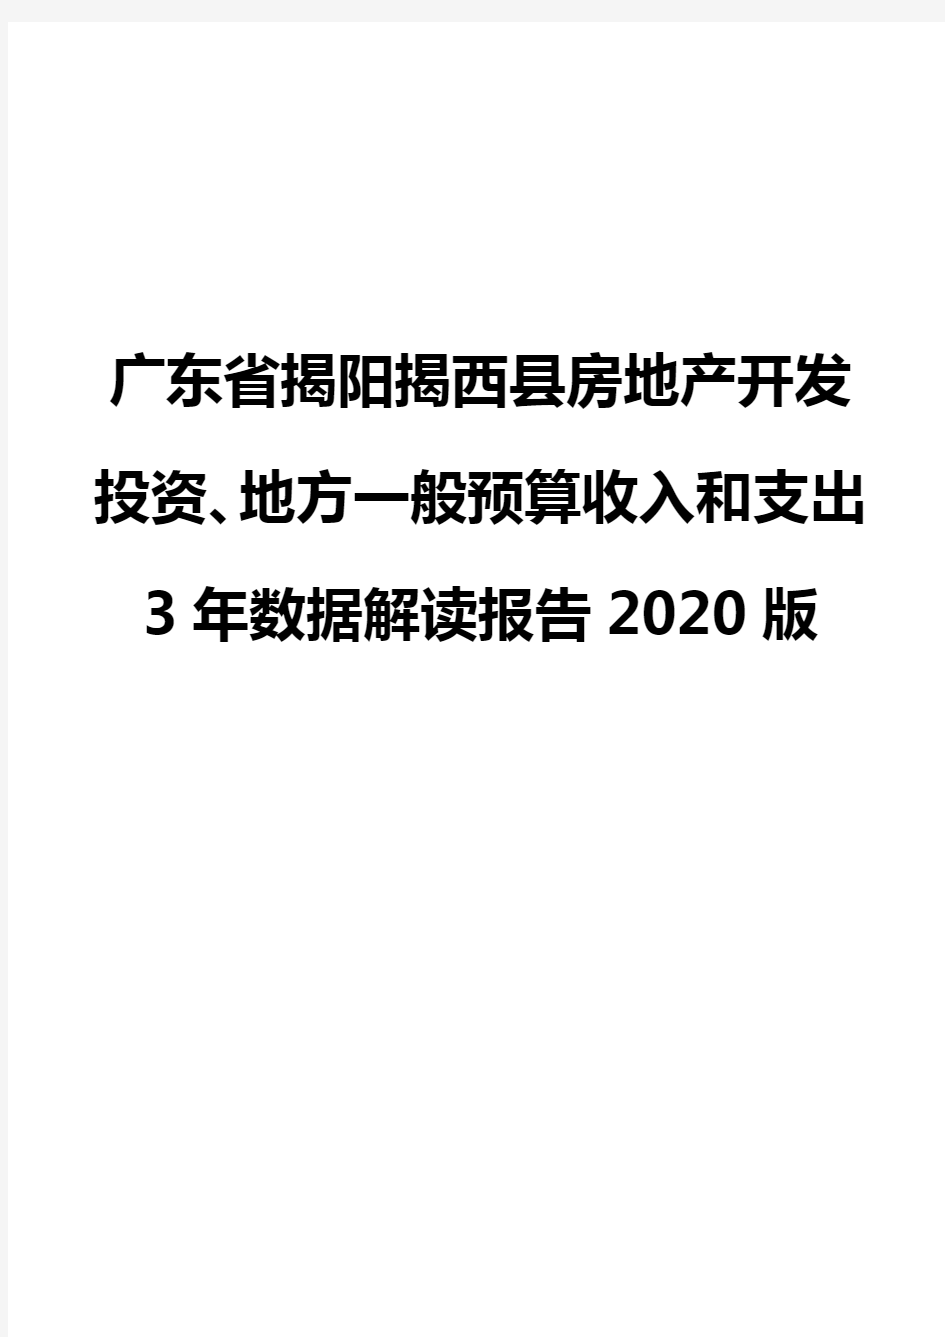 广东省揭阳揭西县房地产开发投资、地方一般预算收入和支出3年数据解读报告2020版